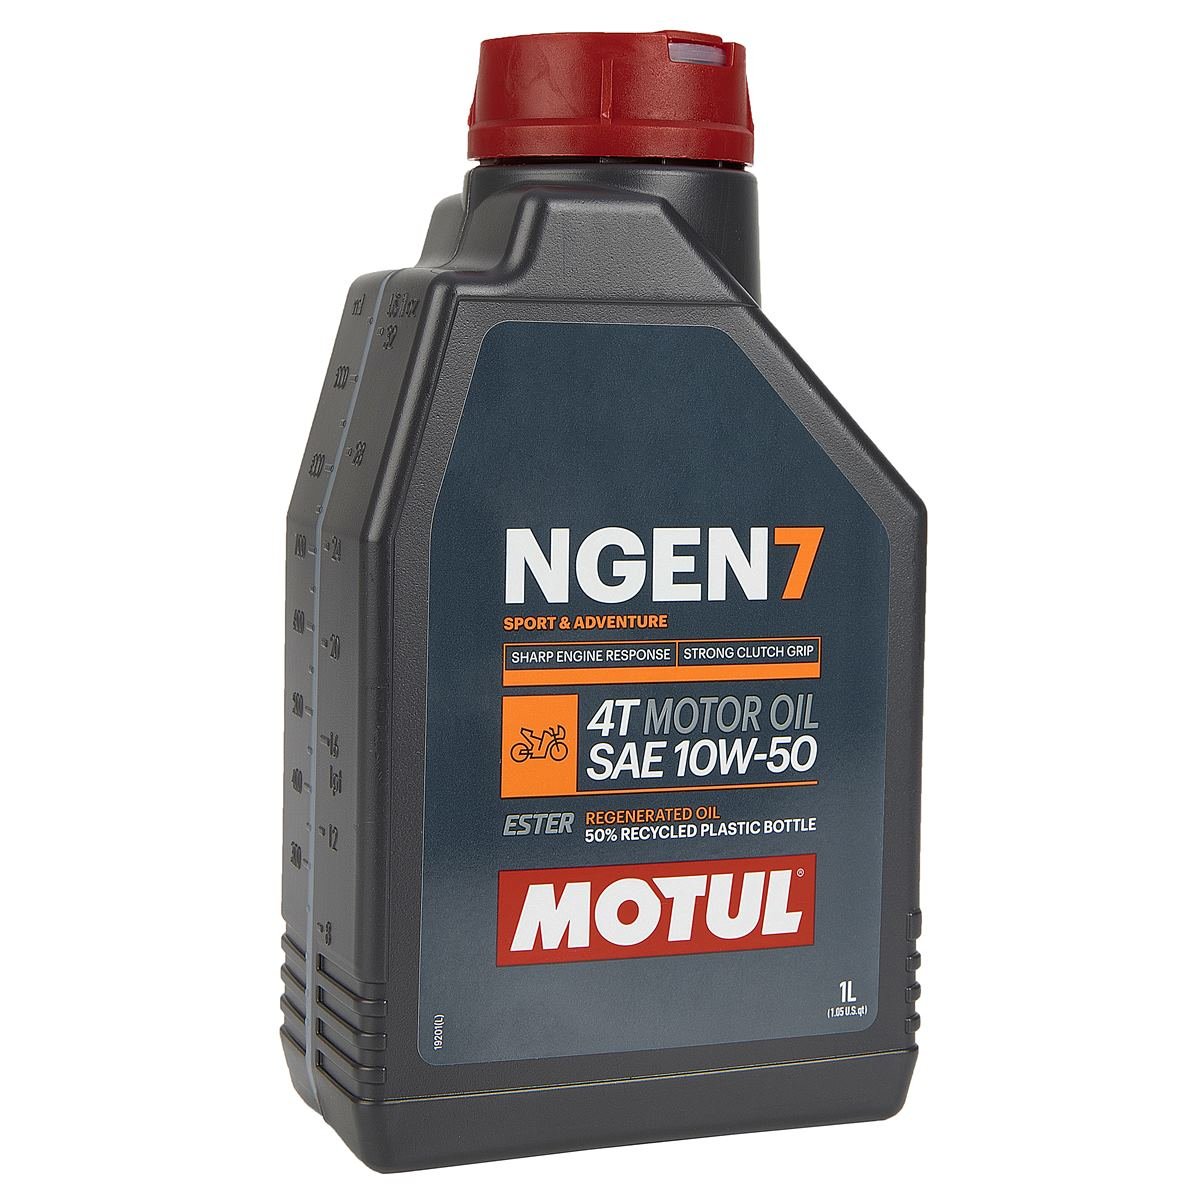 Motul Motor Oil NGEN 7 10W50, 1 Liter